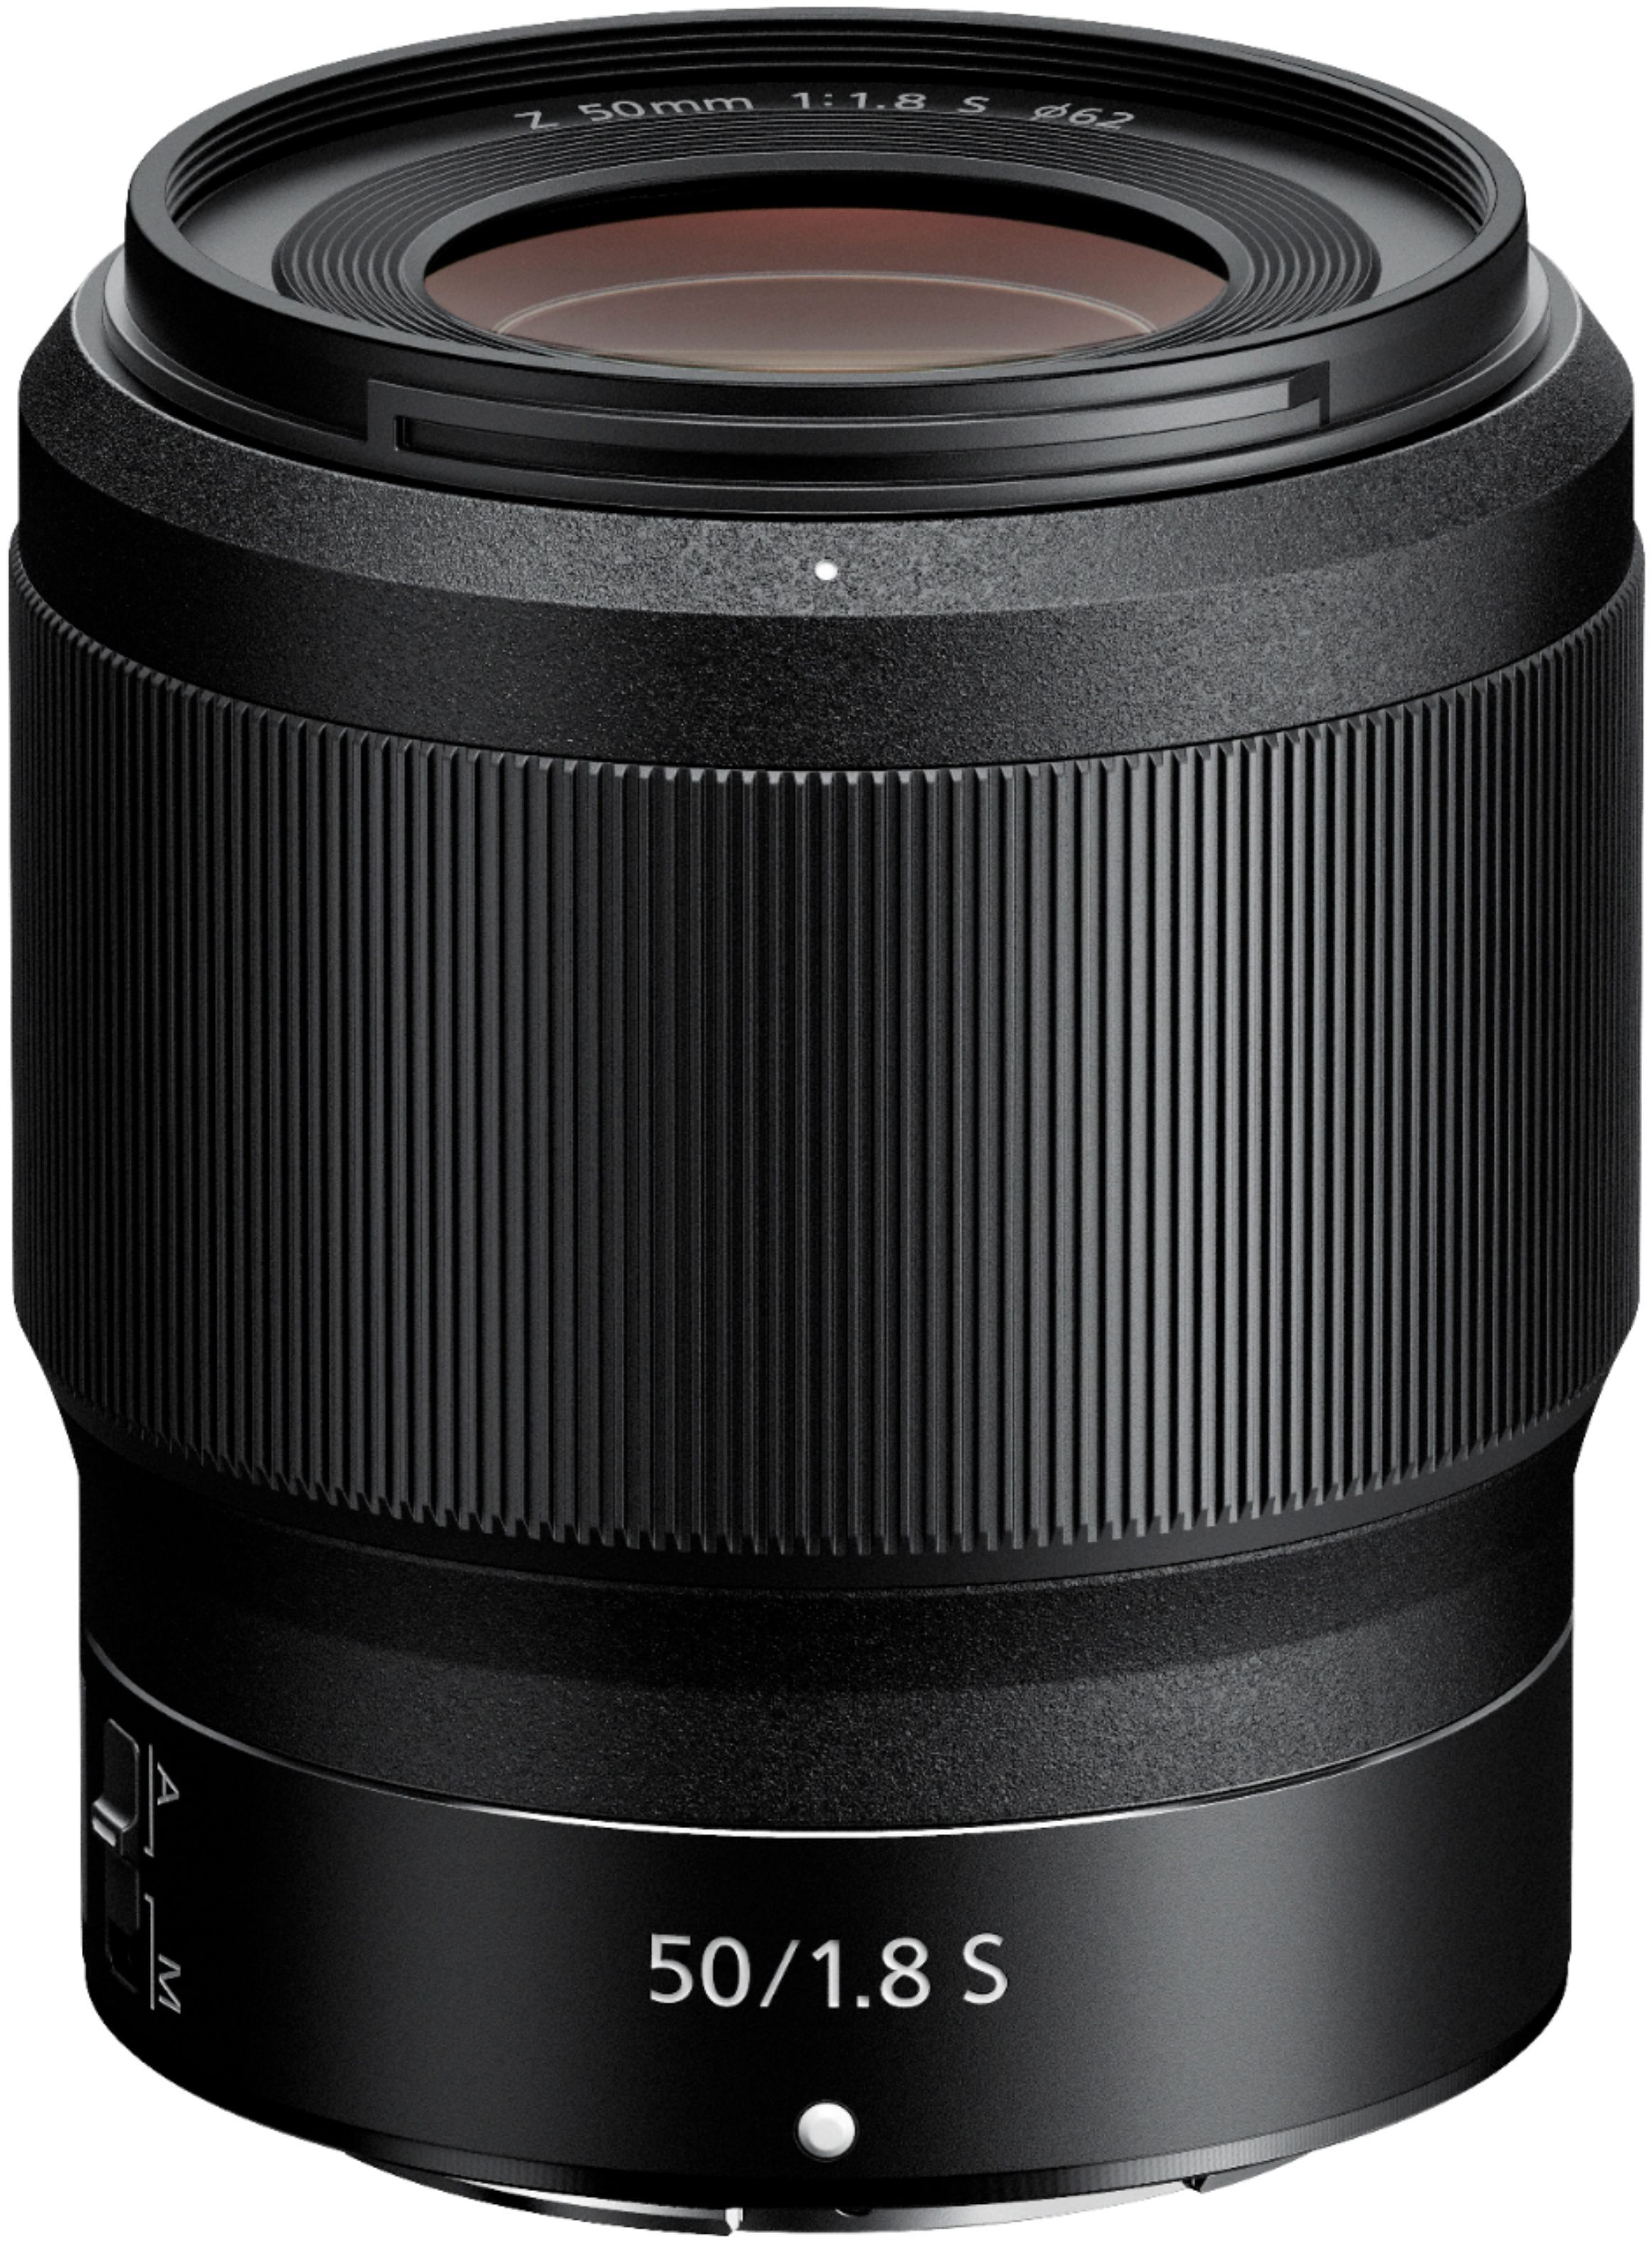 NIKKOR Z 50mm f/1.8 S Standard Prime Lens for Nikon Z Cameras Black 20083 - Best Buy | Best Buy U.S.